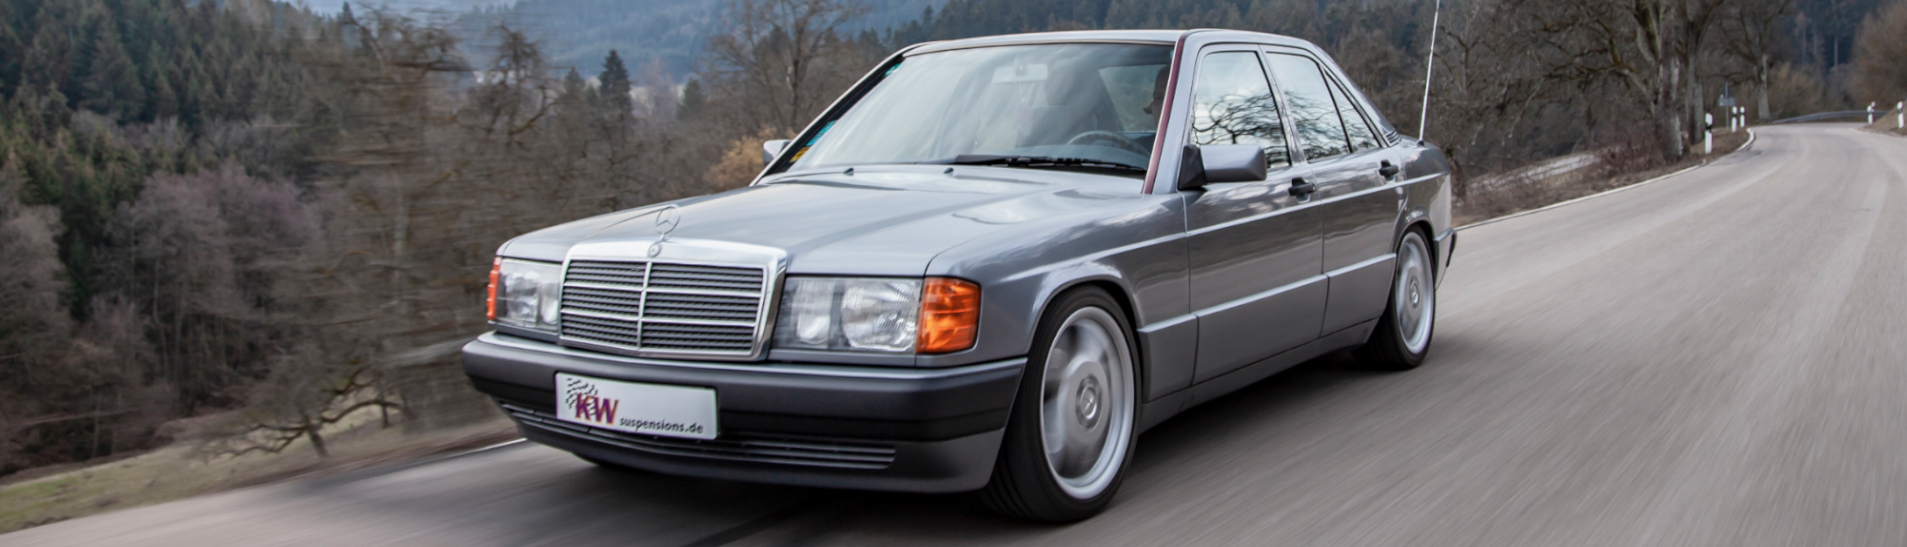 KW Klassik Fahrwerk für Mercedes-Benz 190 (W201)